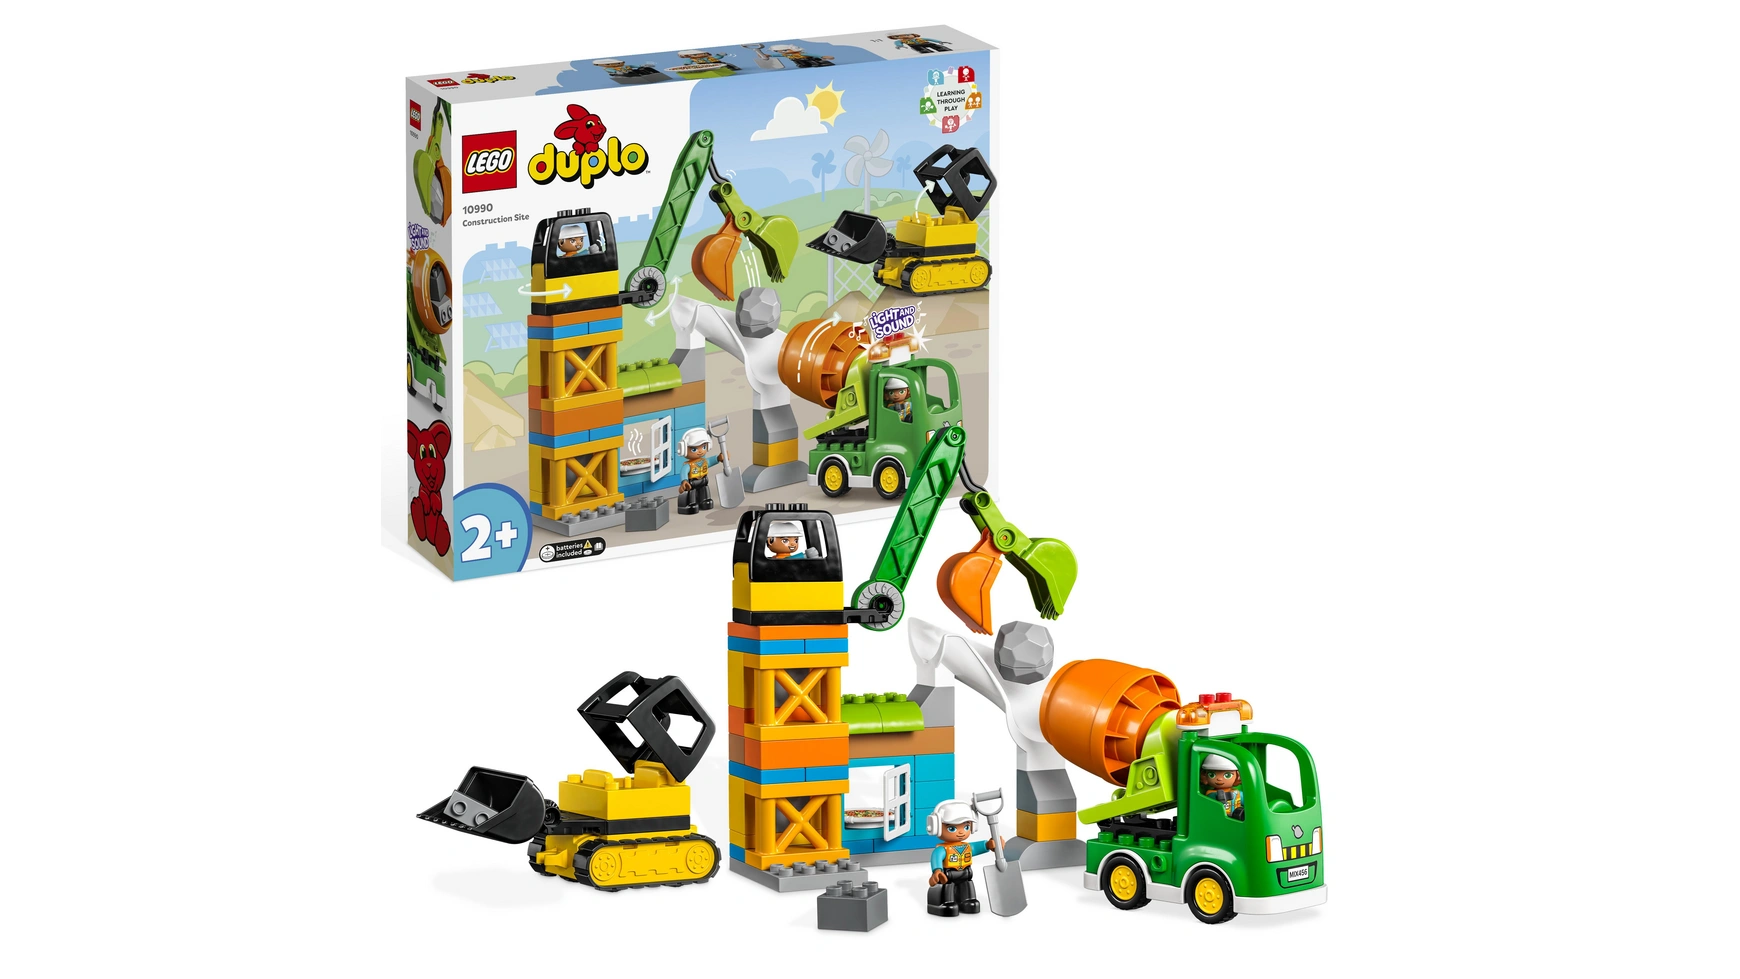 Lego DUPLO Строительная площадка со строительной техникой, игрушка для малышей книжки картонки lego city книжка картинка строительная площадка